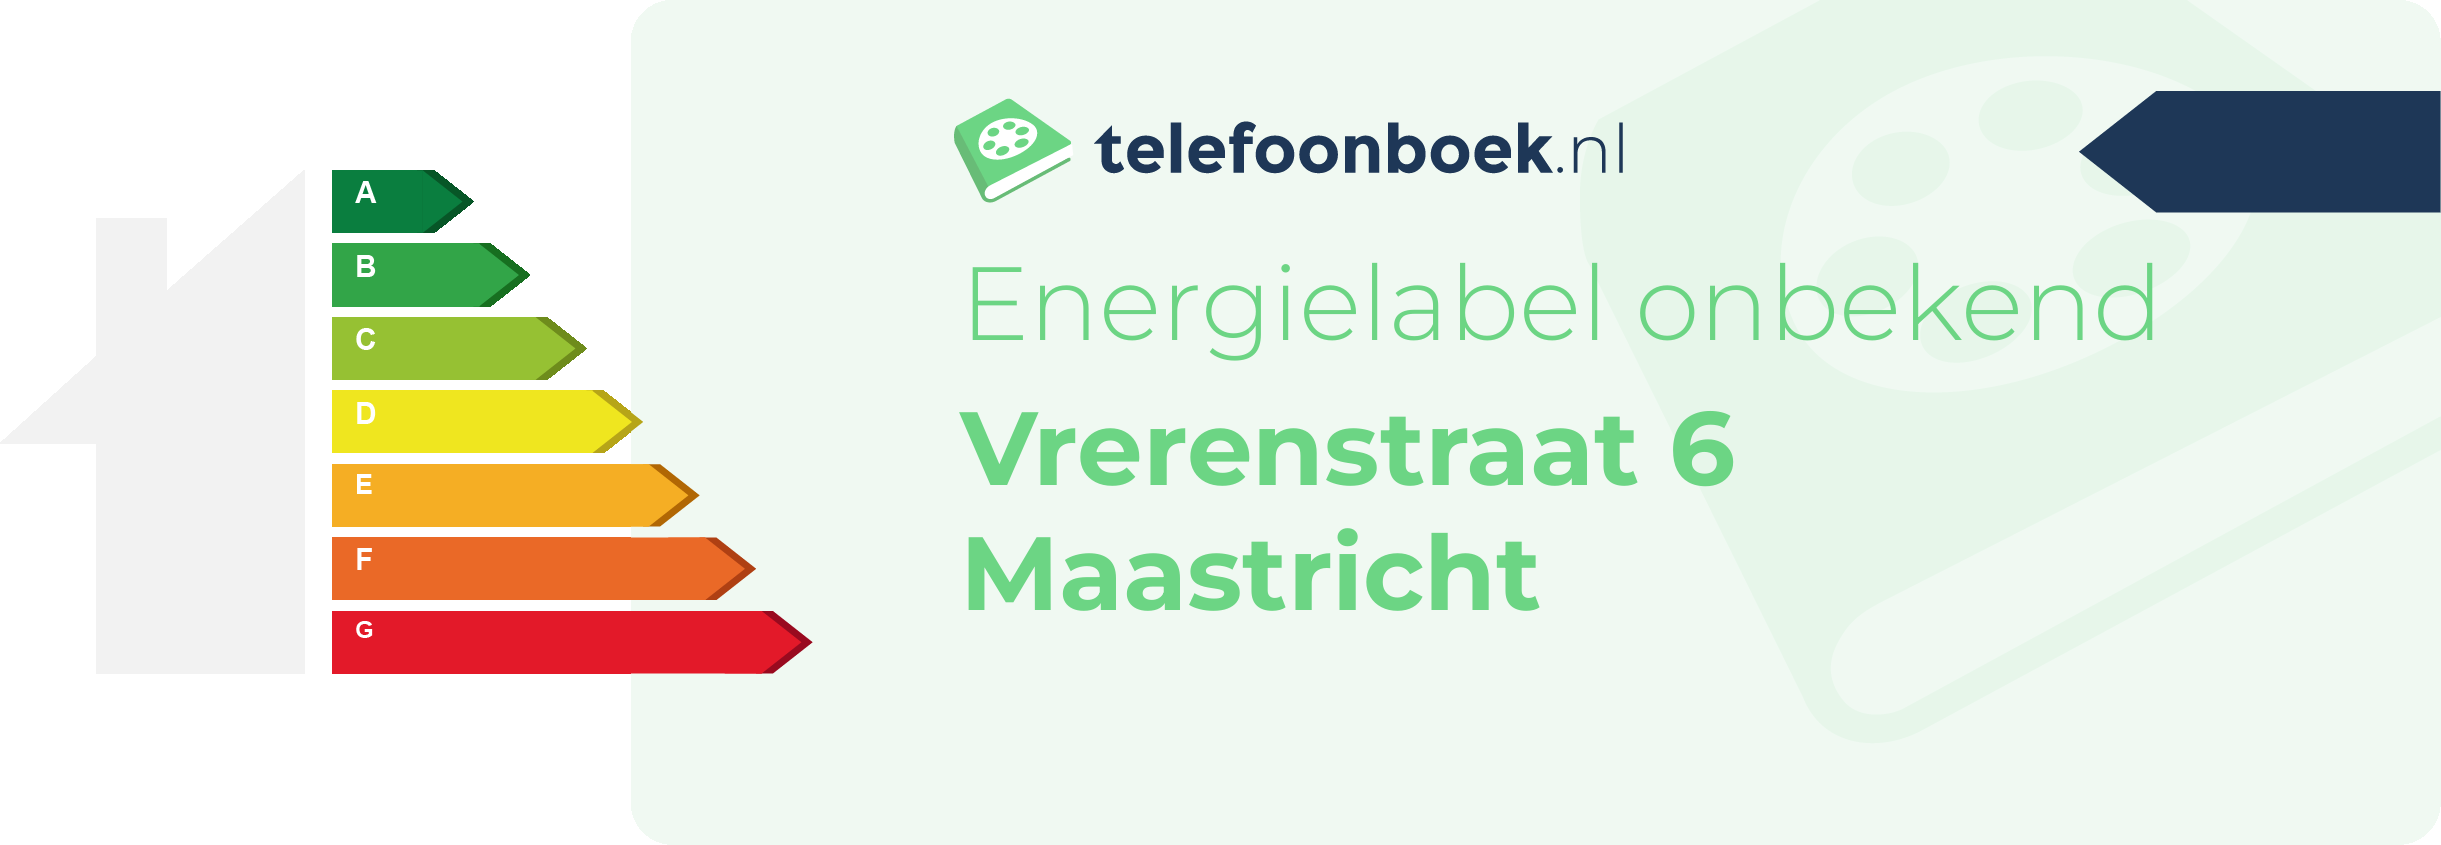 Energielabel Vrerenstraat 6 Maastricht